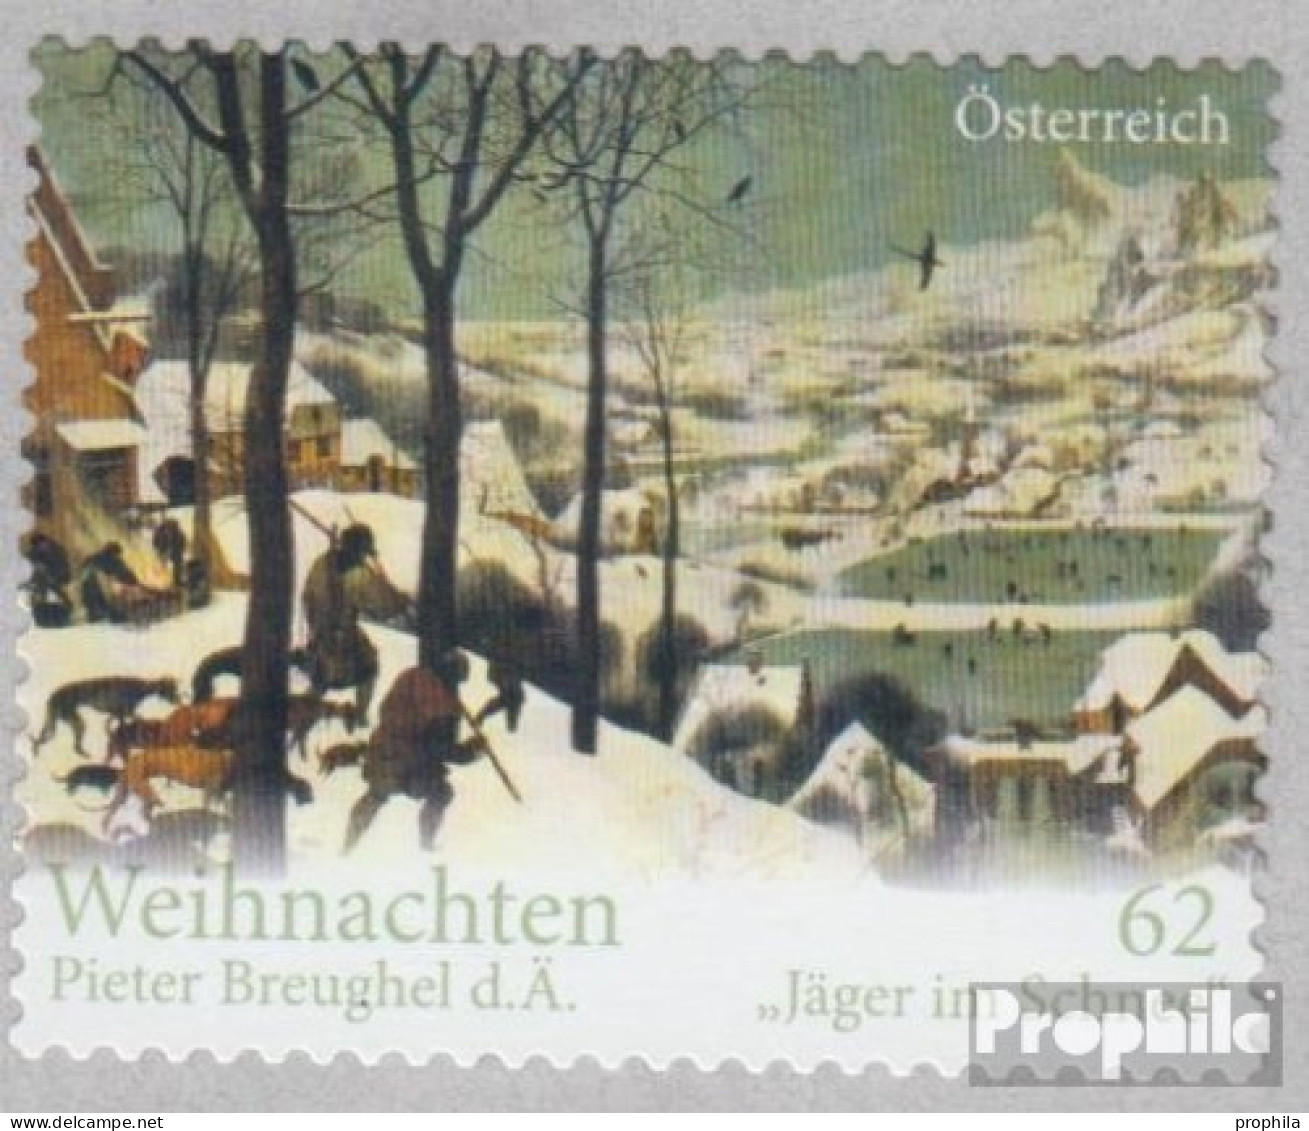 Österreich 3042 (kompl.Ausg.) Postfrisch 2012 Weihnachten - Ongebruikt